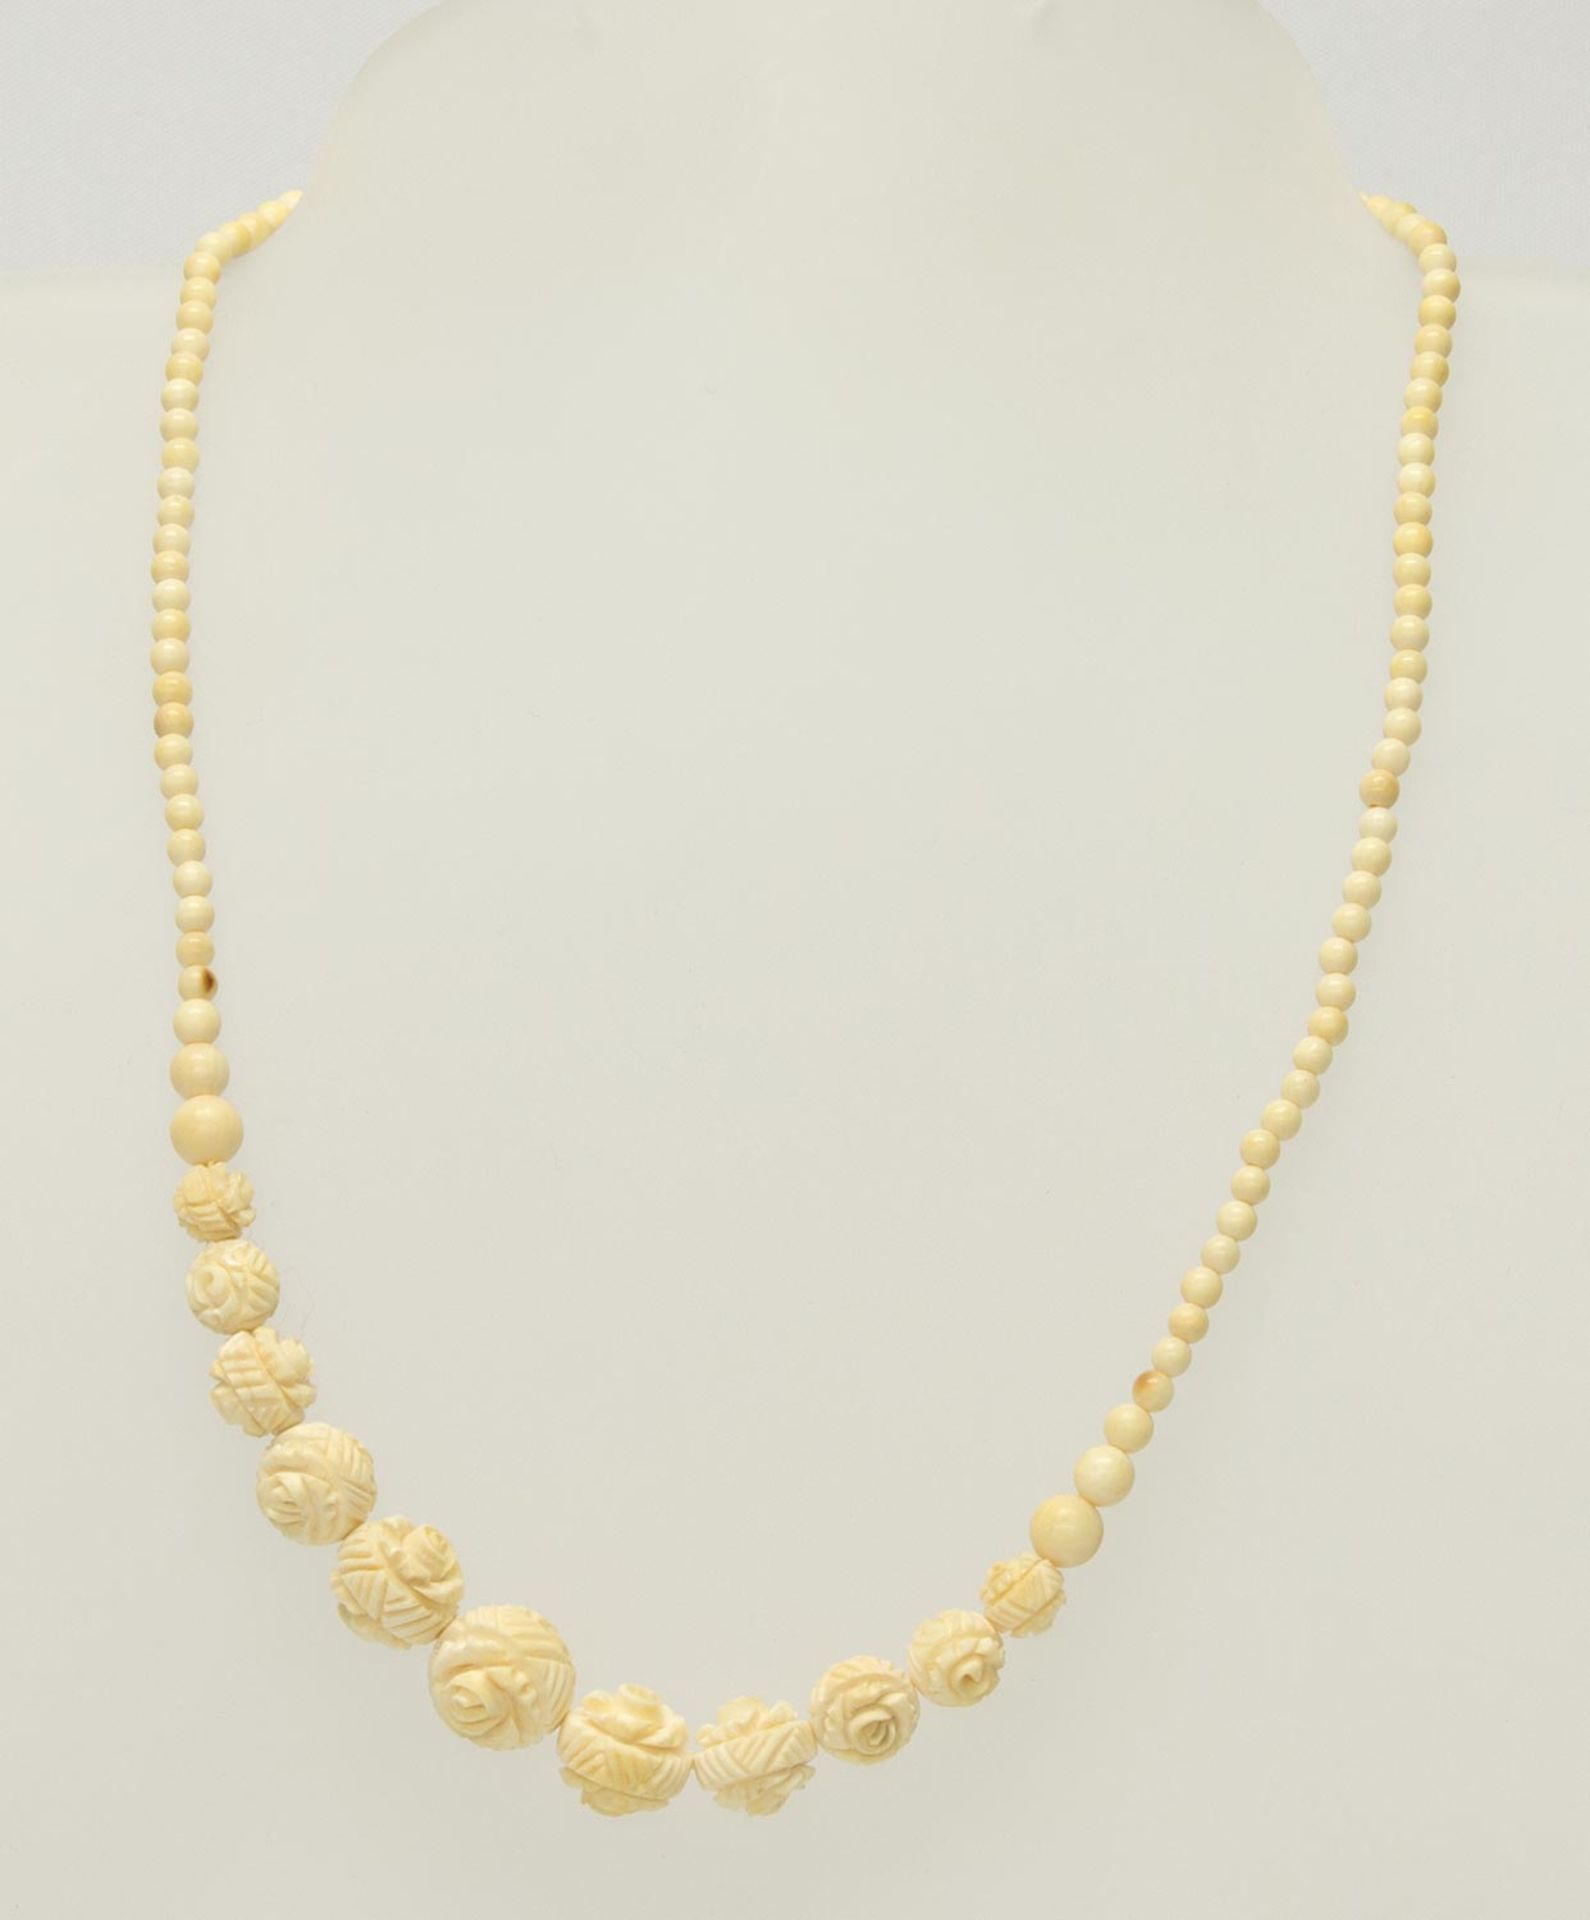 Ketteum 1920, Elfenbeinperlen im Verlauf, 11 Perlen in Form einer Rose beschnitzt, Schraubverschluß,